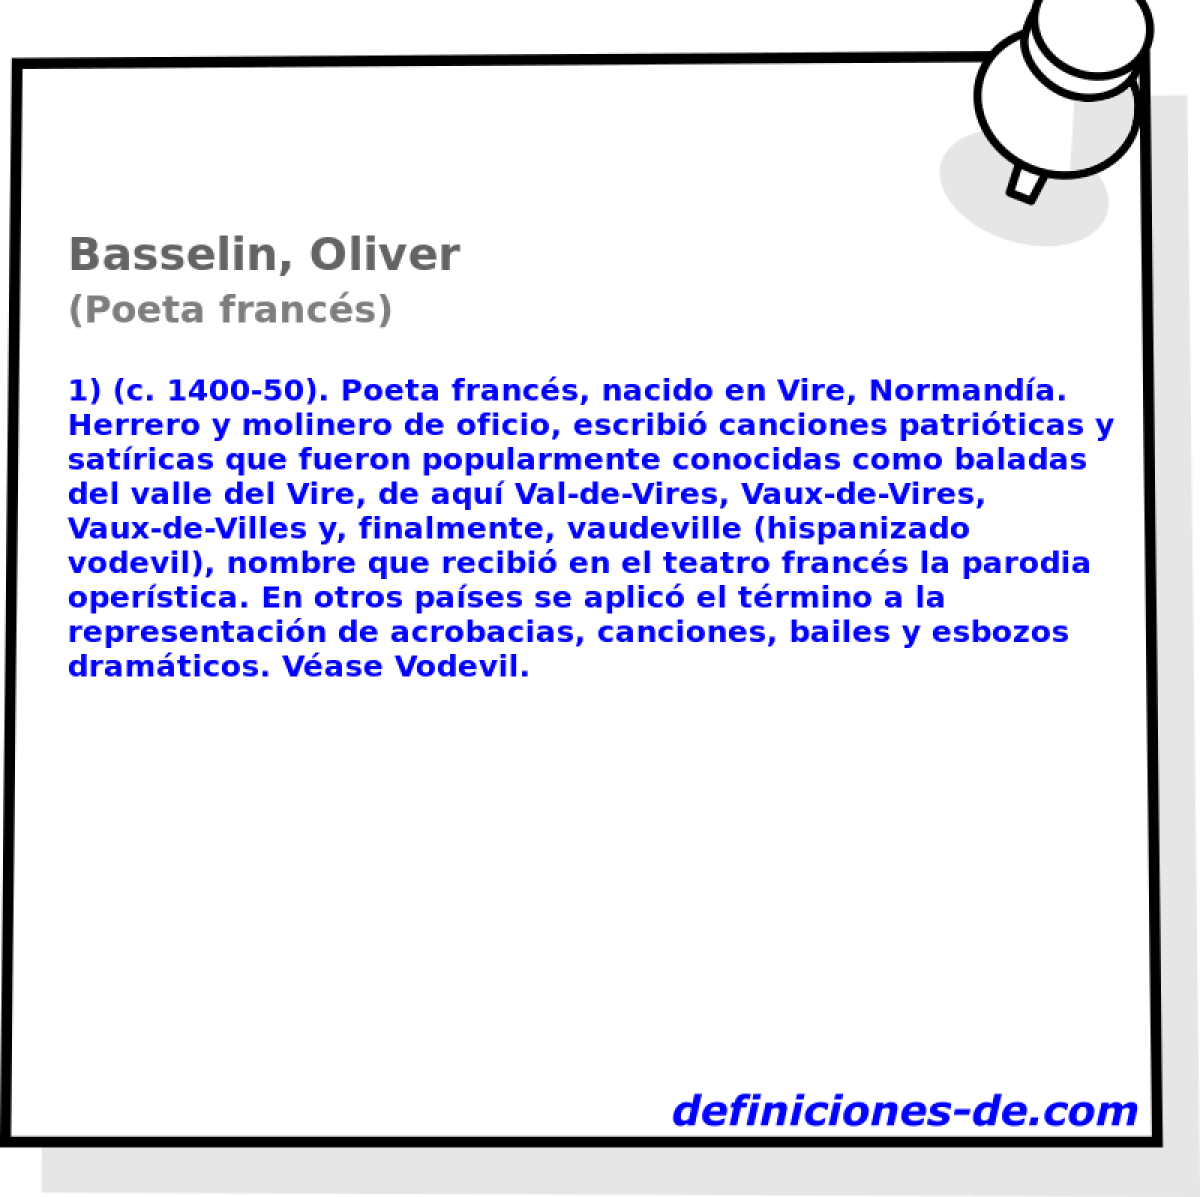 Basselin, Oliver (Poeta francs)